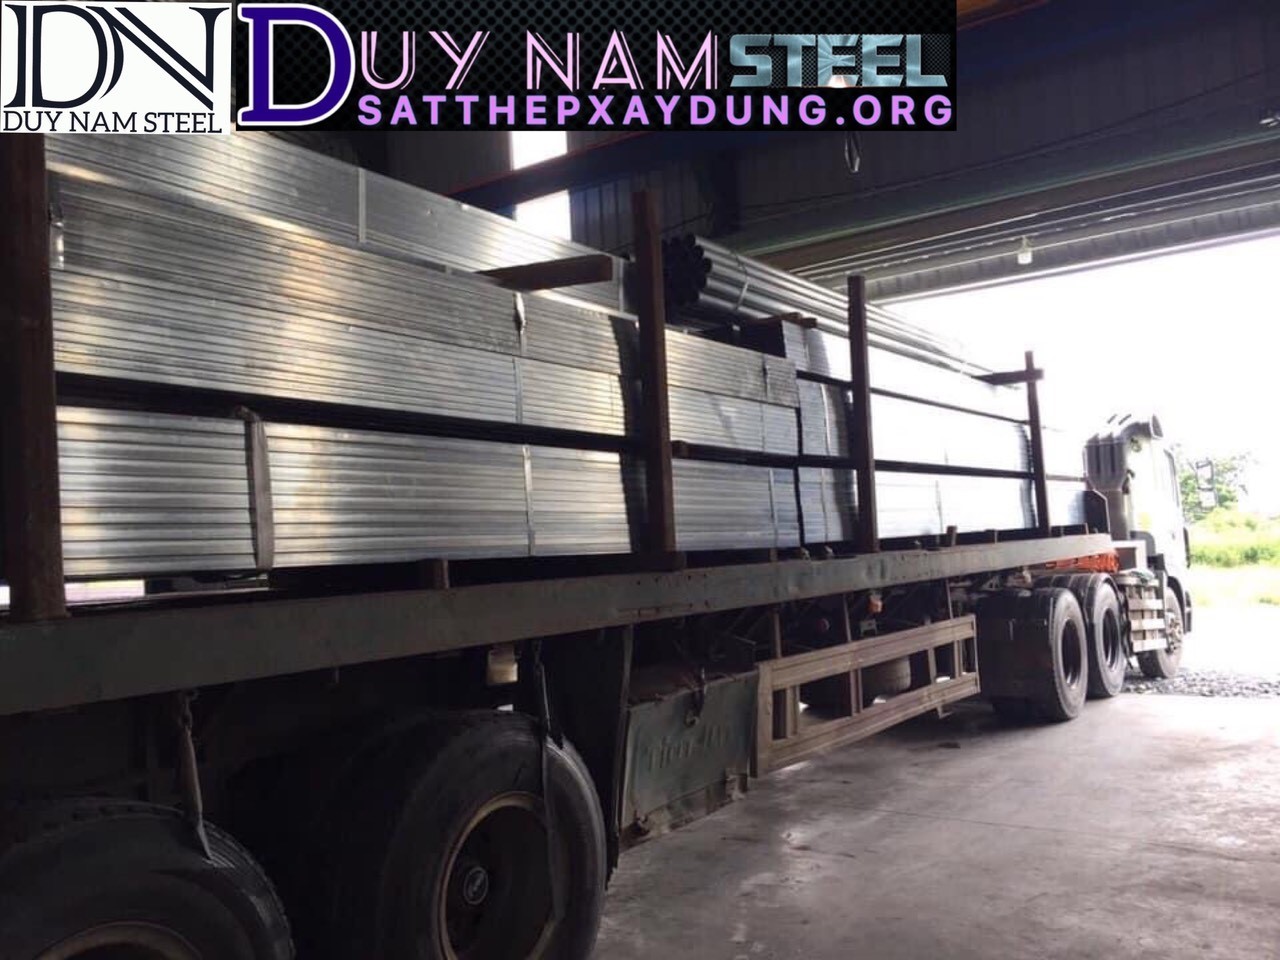 Duy Nam Steel cung cấp sắt hộp giá rẻ khu vực quận 12 Hóc Môn